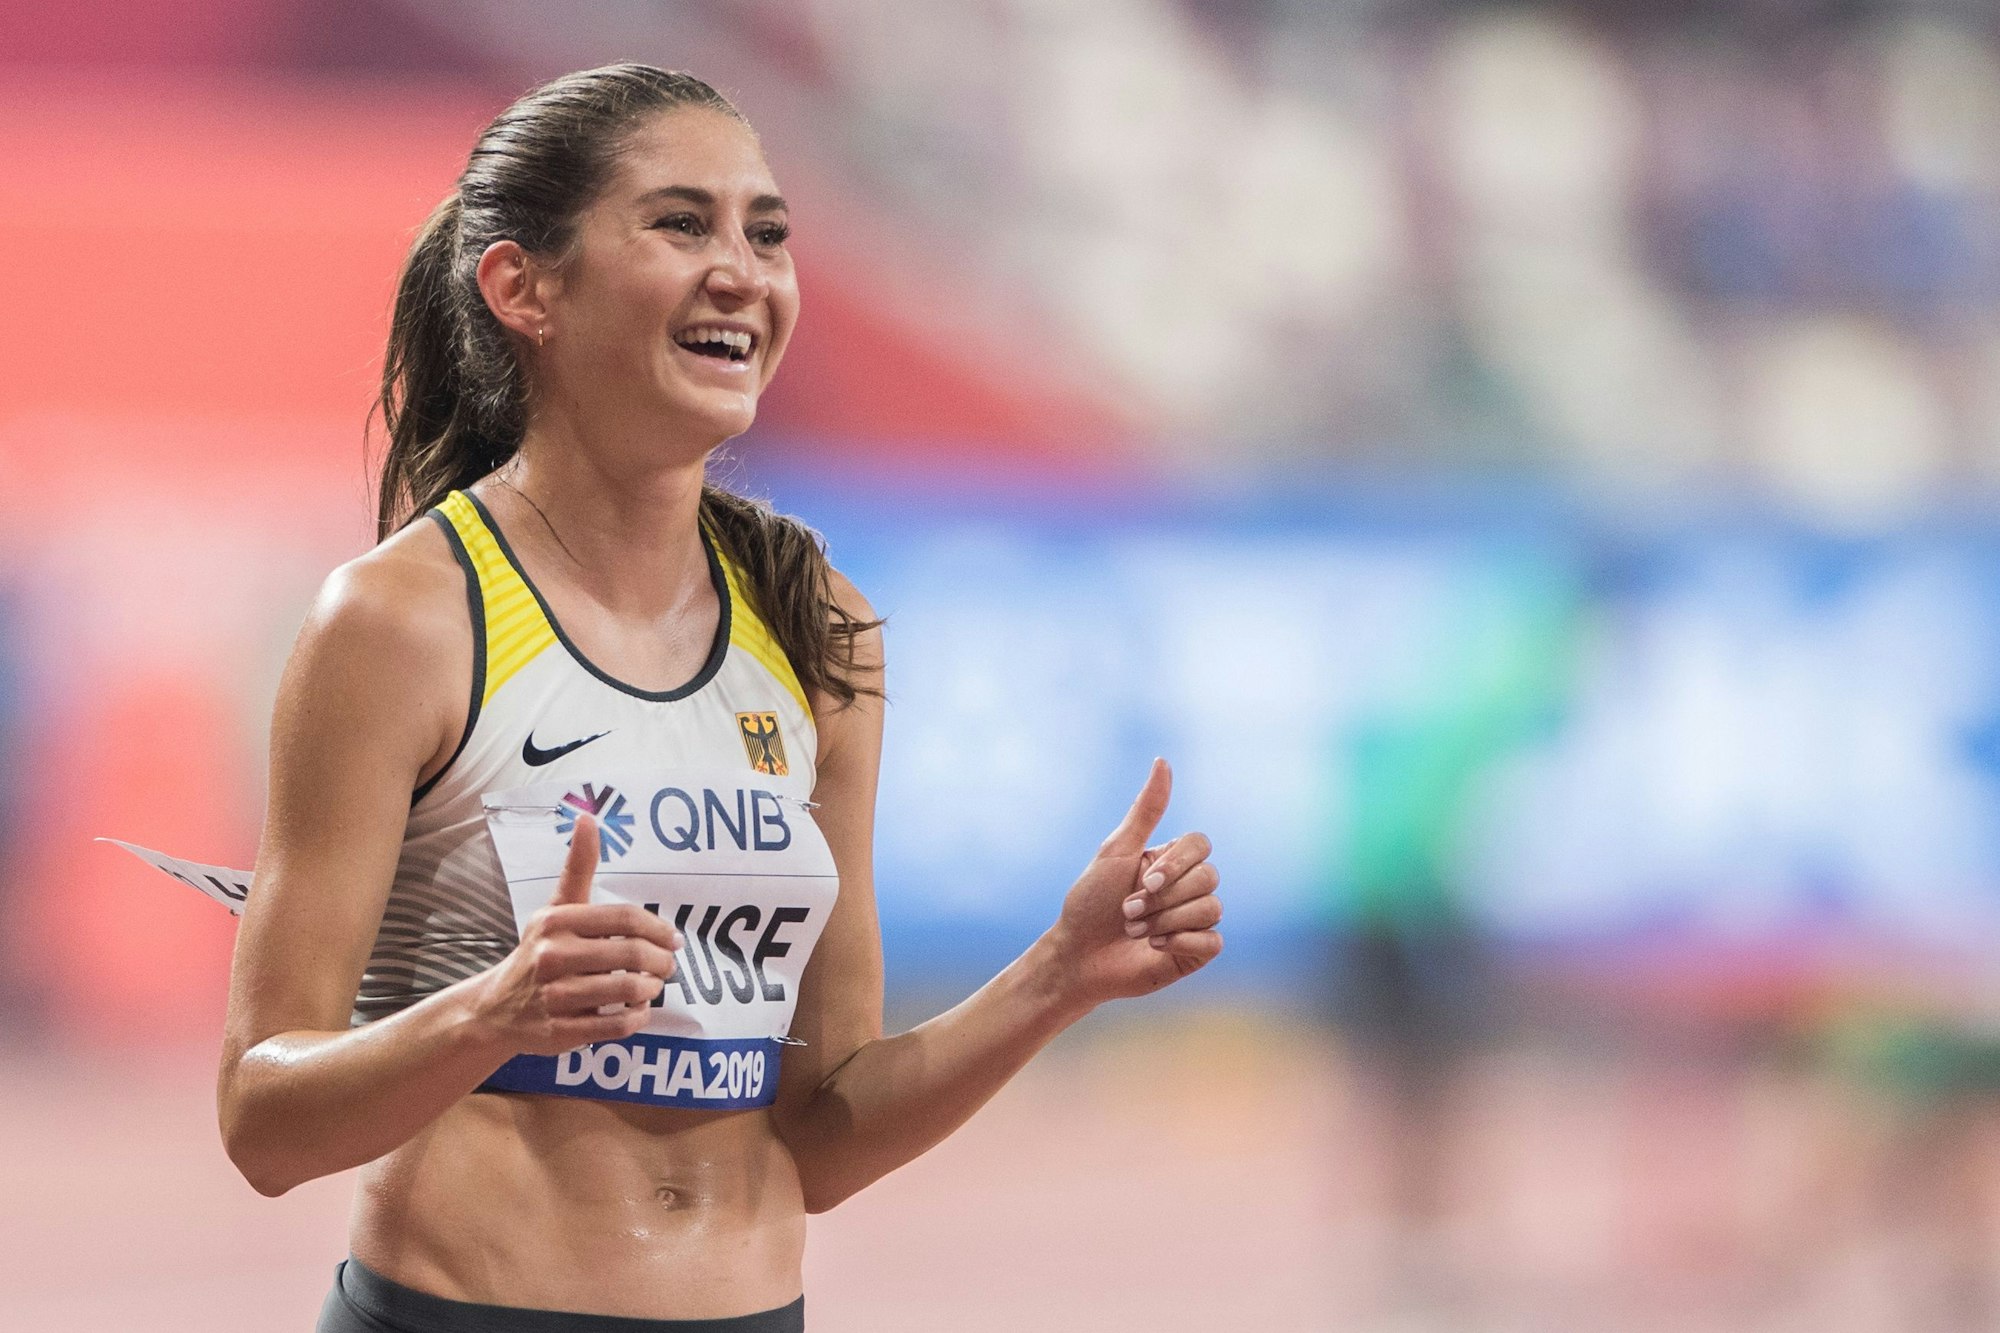 Gesa Krause freut sich über Bronze und deutschen Rekord bei der Leichtathletik-WM 2019 in Doha.